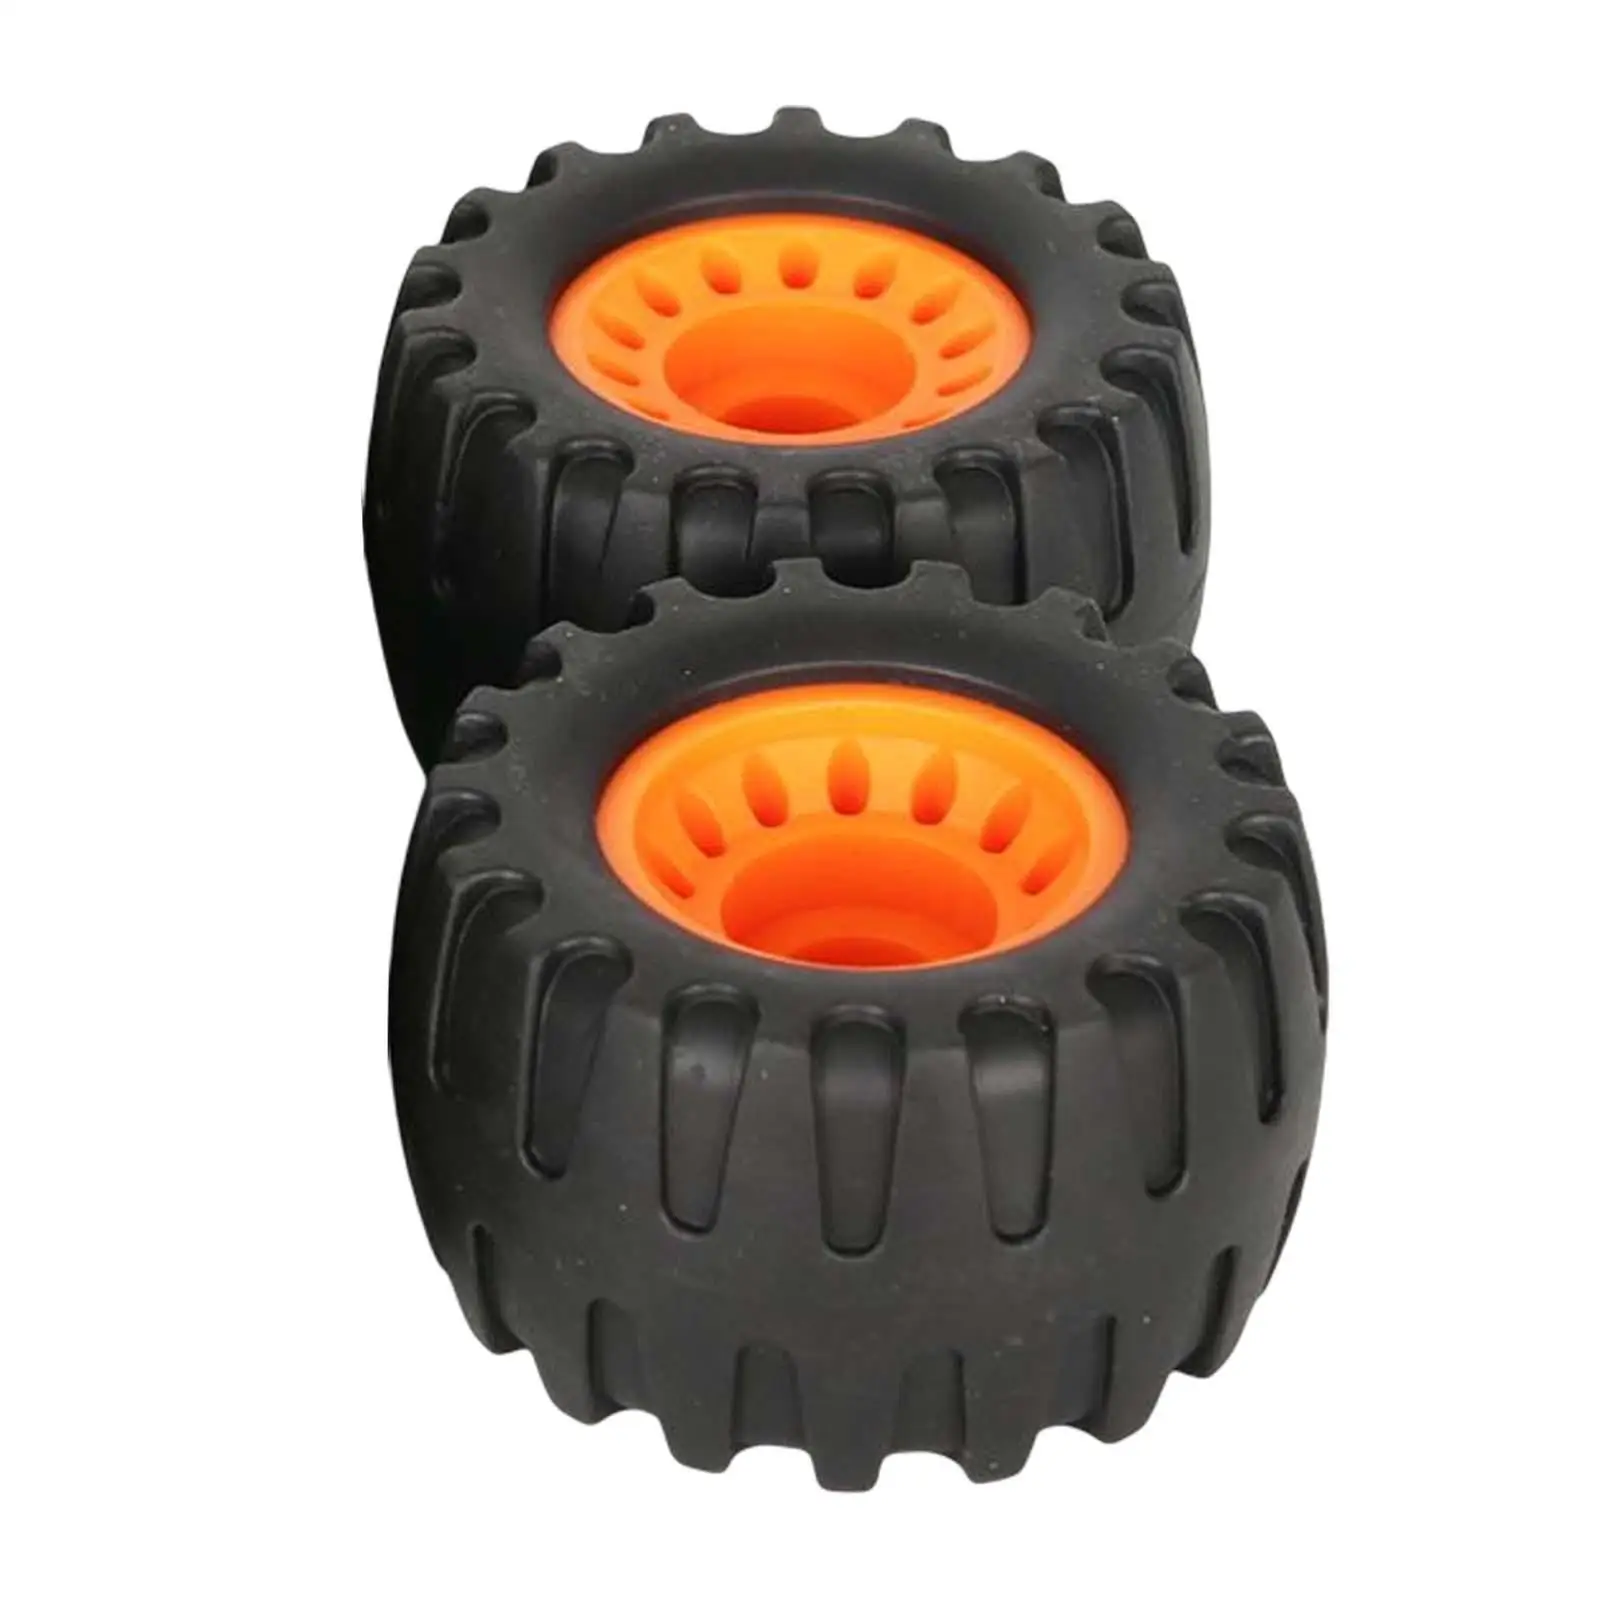 2x Longboard Wheels Repair Maintain Parts Black with Orange Wear Resistant